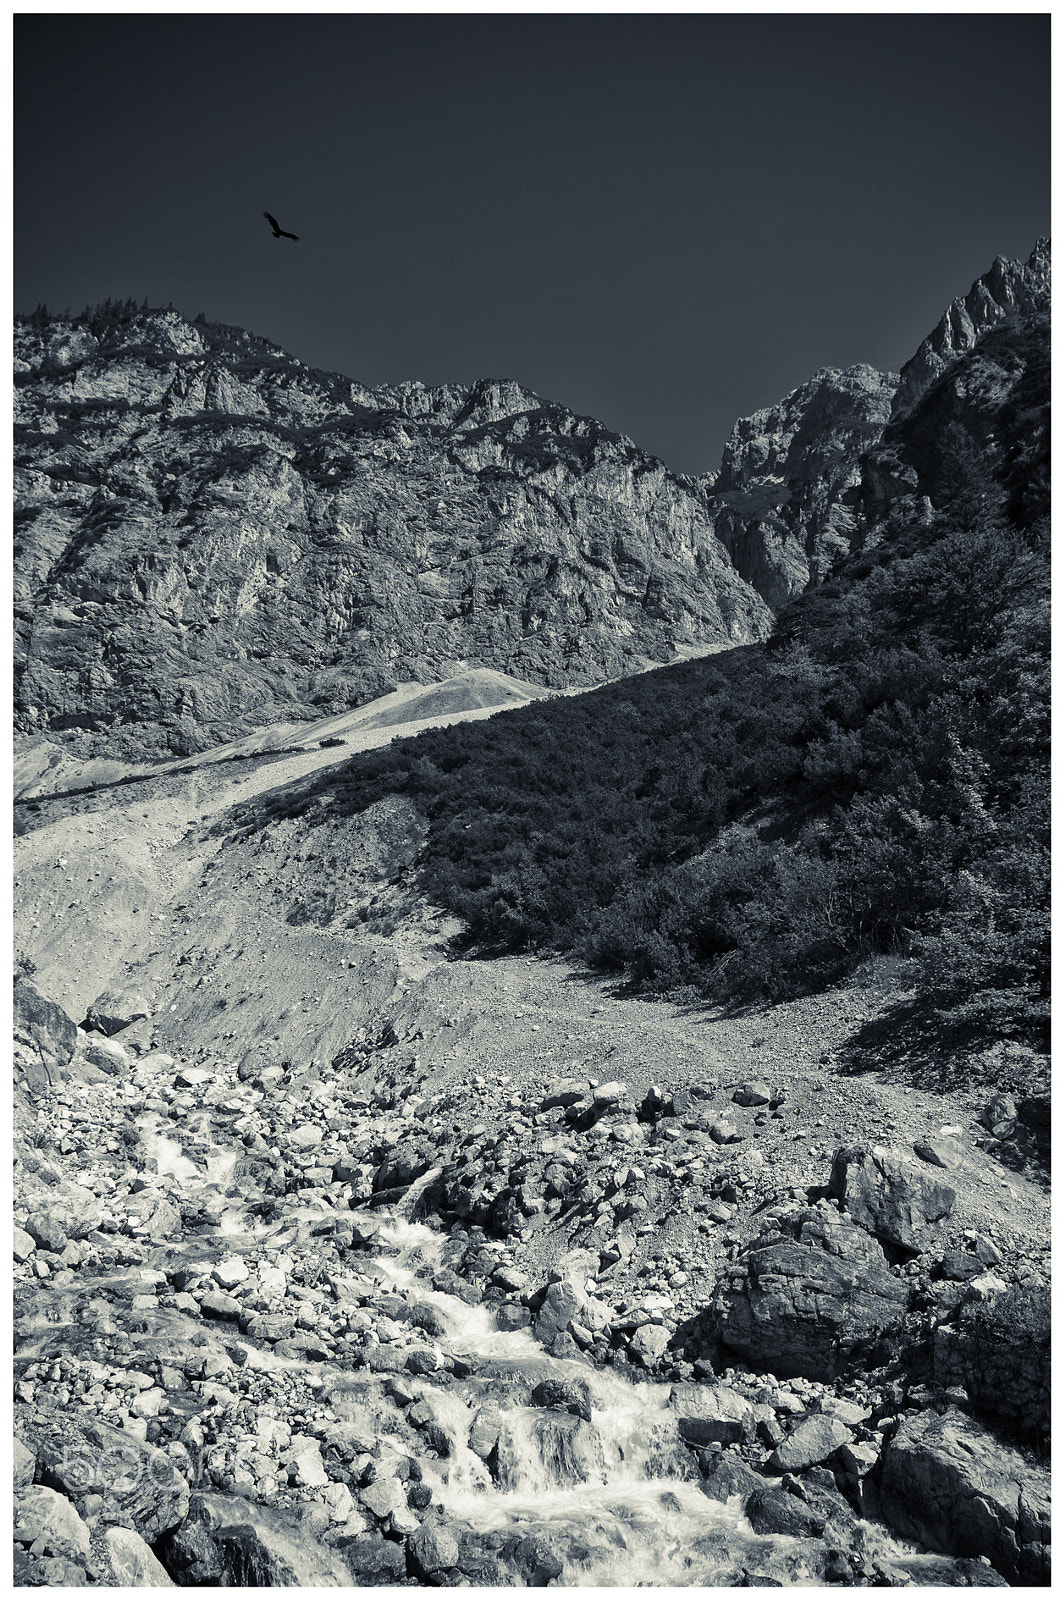 Pentax K-3 sample photo. Montagne de la rocca photography